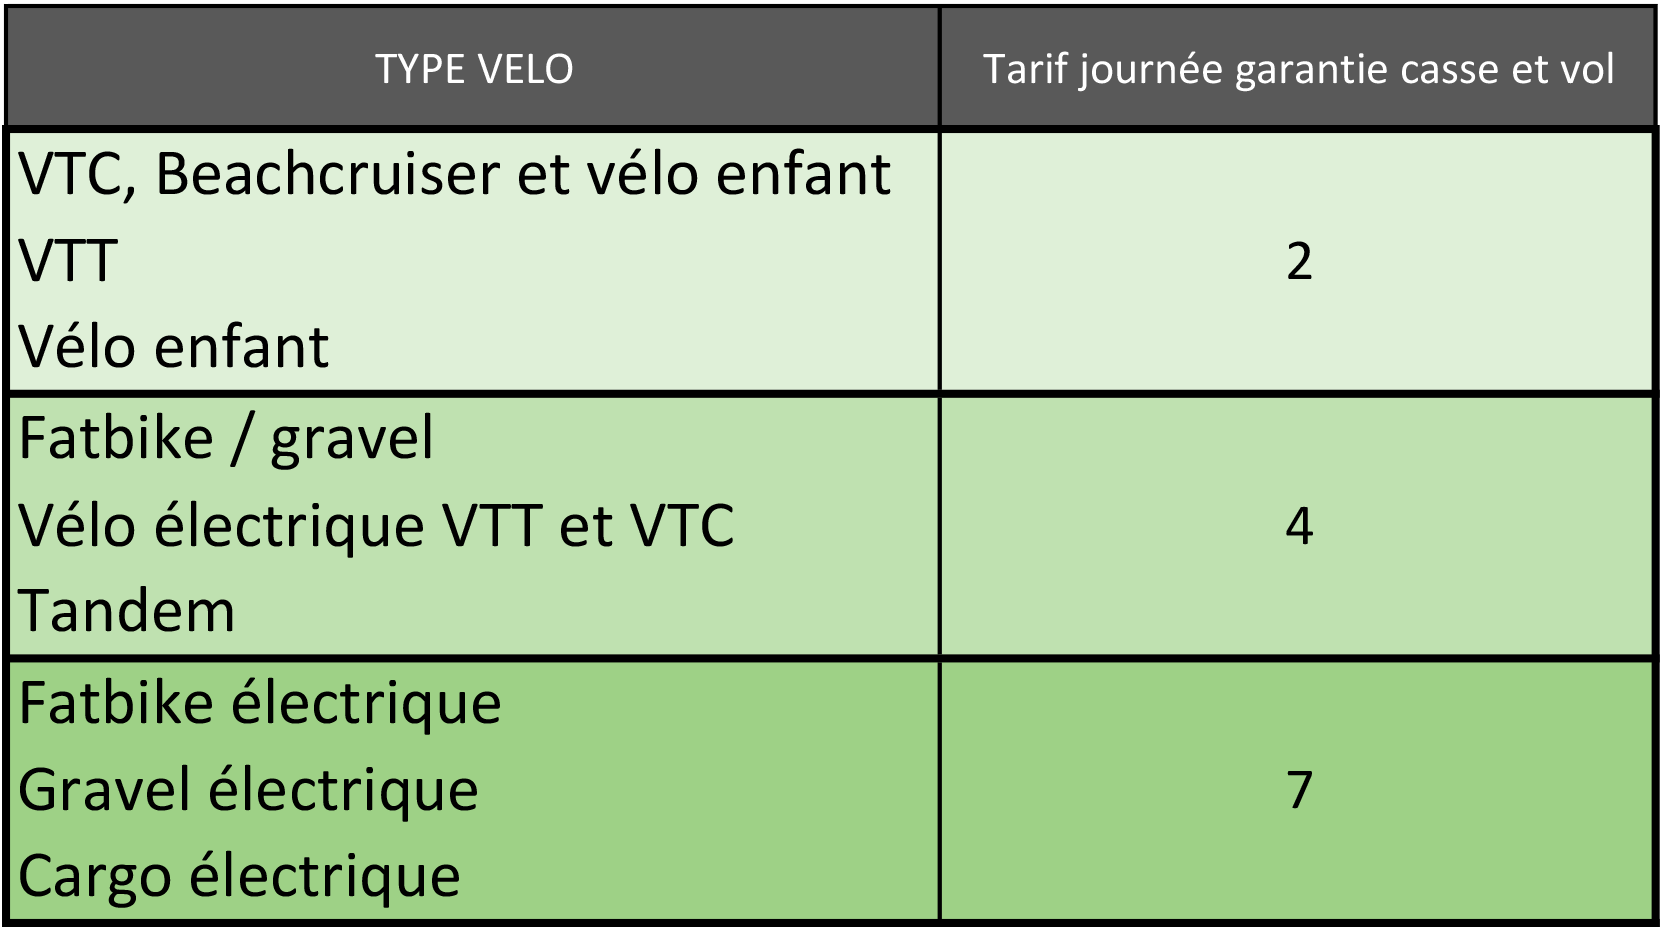 grille tarifaire des garanties pour nos locations de vélo à Lacanau